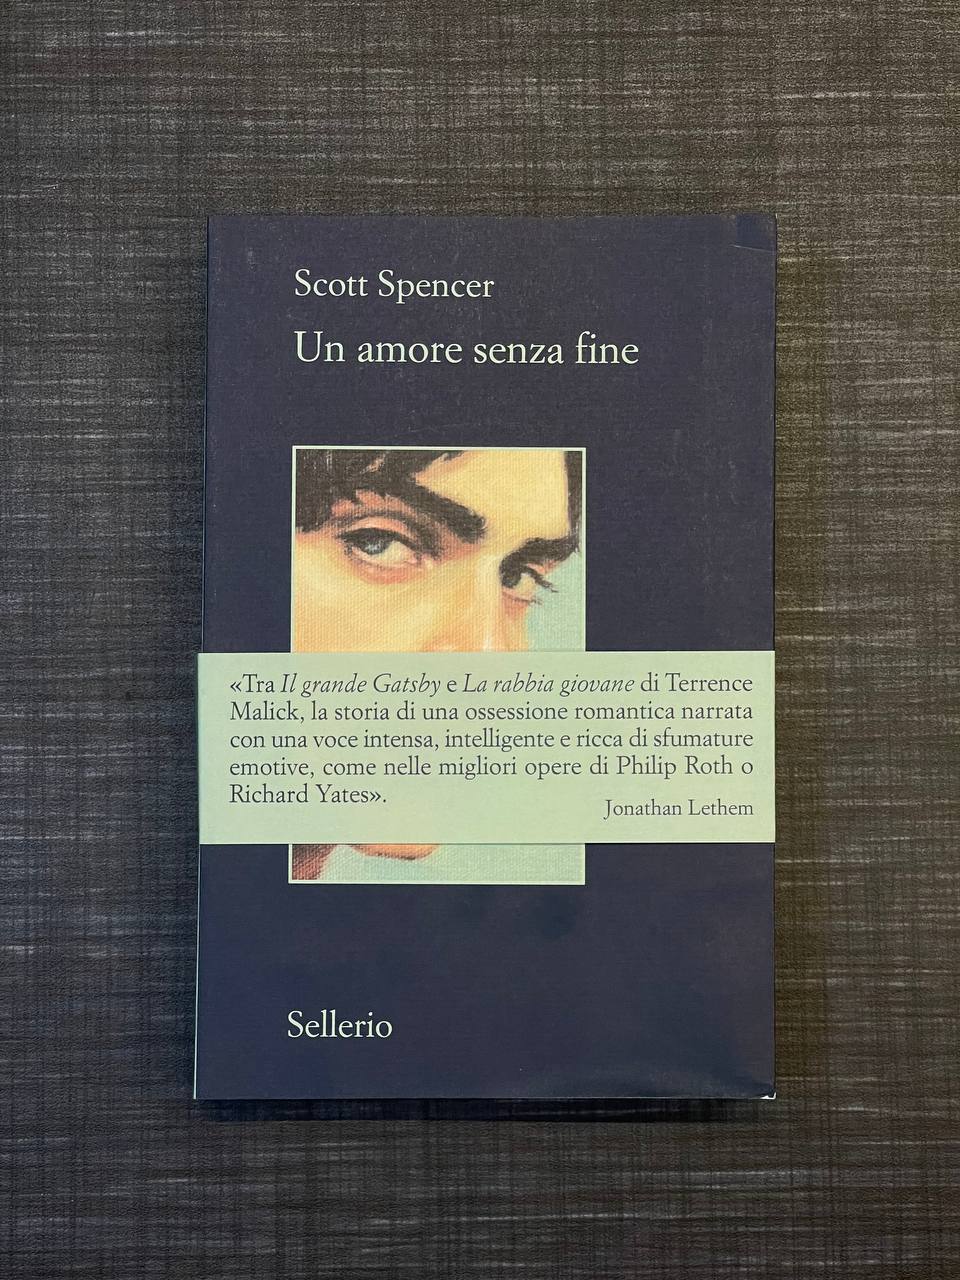 Un amore senza fine di Scott Spencer: riassunto trama e recensione 